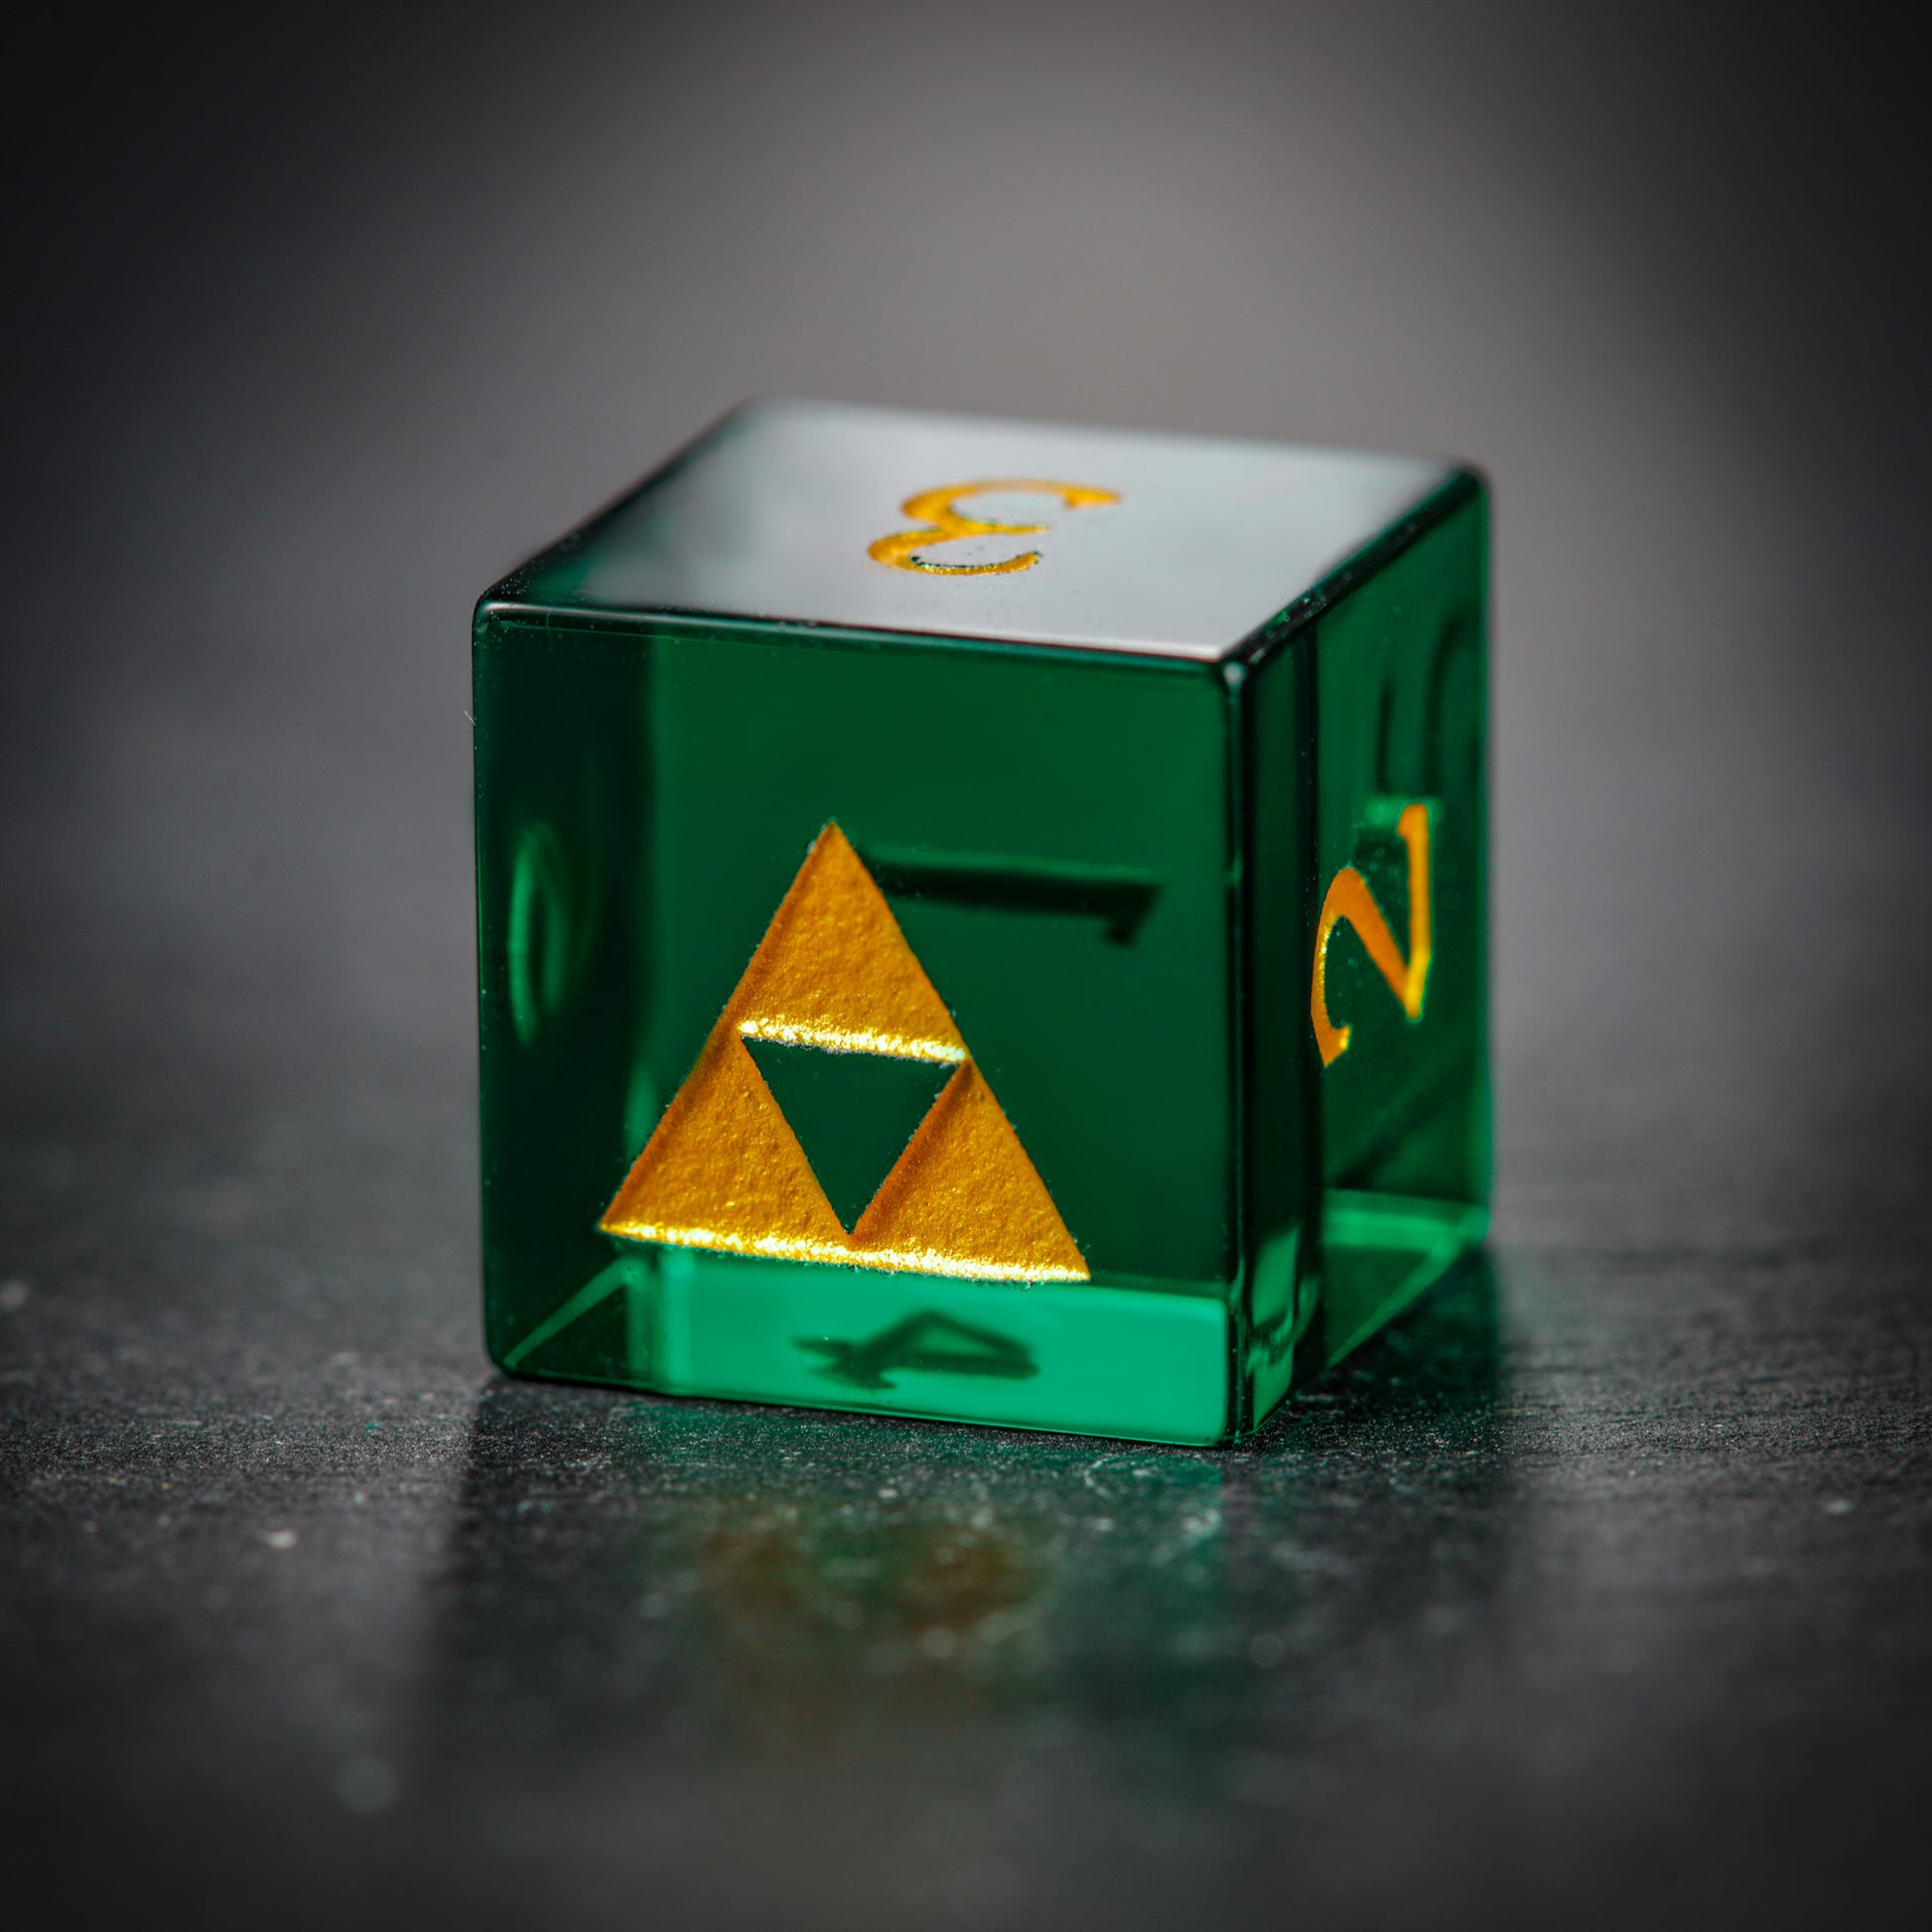 Green Glass All Zelda DnD D&D Dice Set - CrystalMaggie